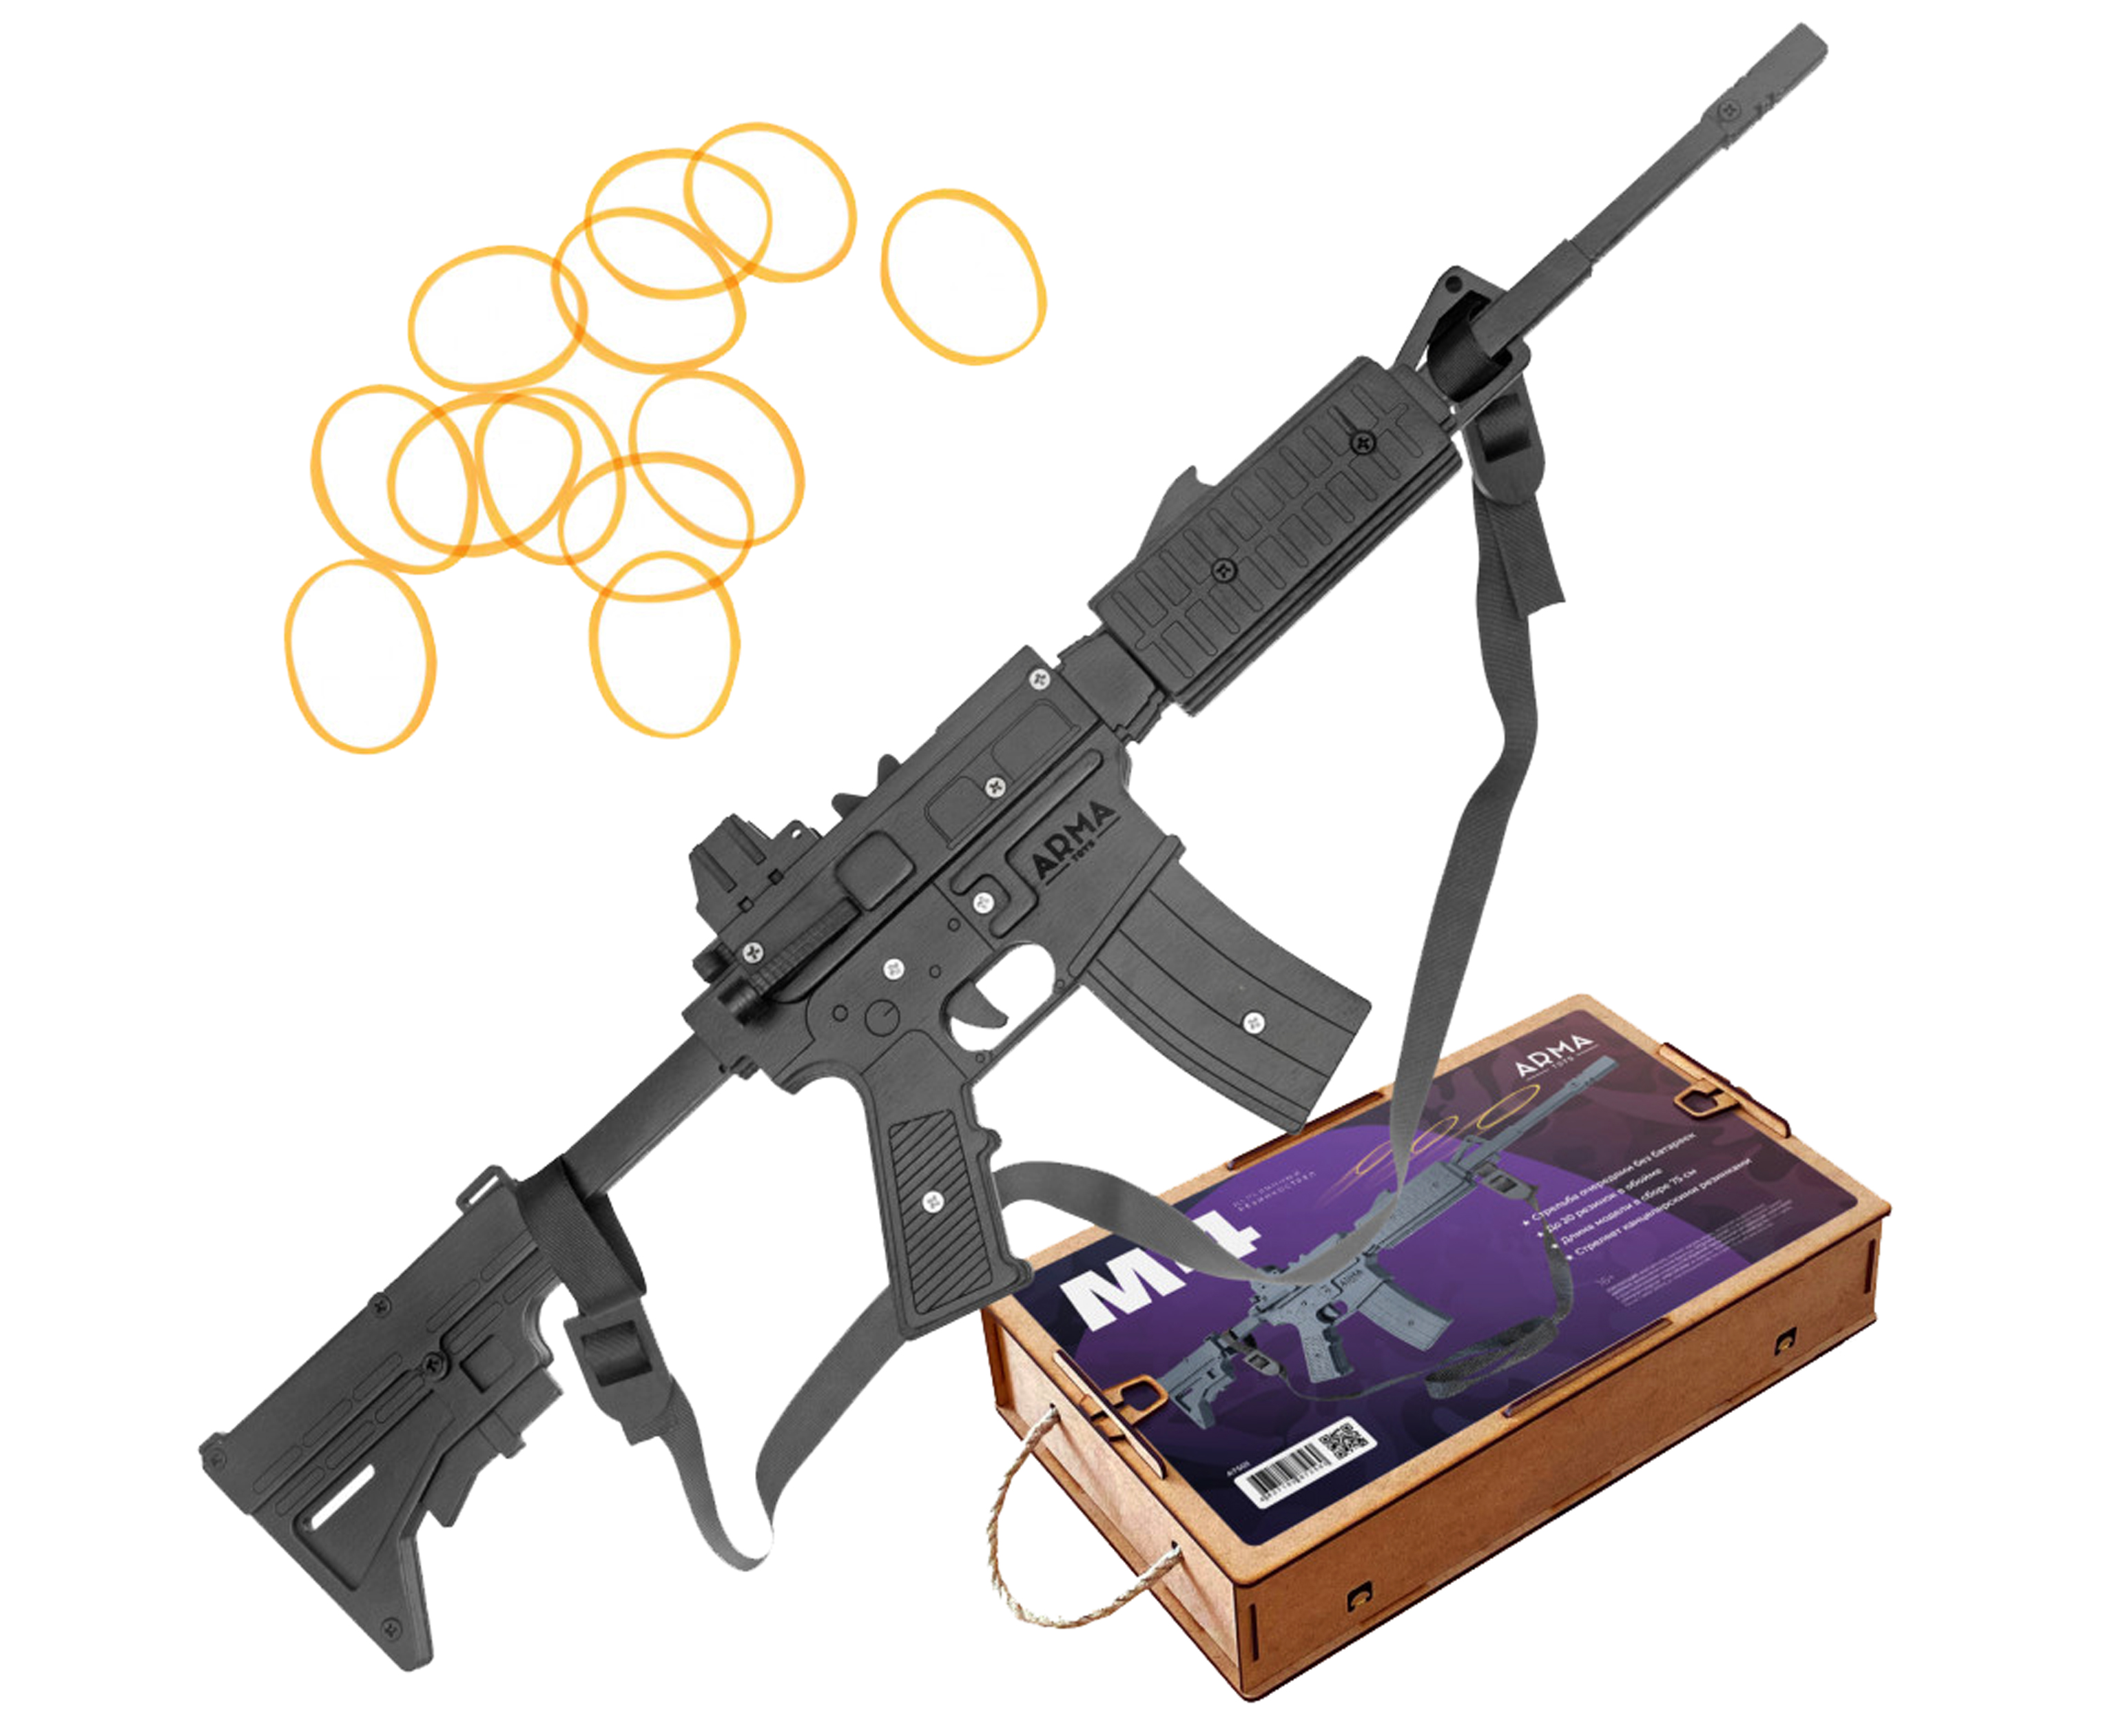 Резинкострел игрушечный Arma toys винтовка M4 макет, AR-15, AT501 резинкострел arma toys пулемет рпк макет калашников at037